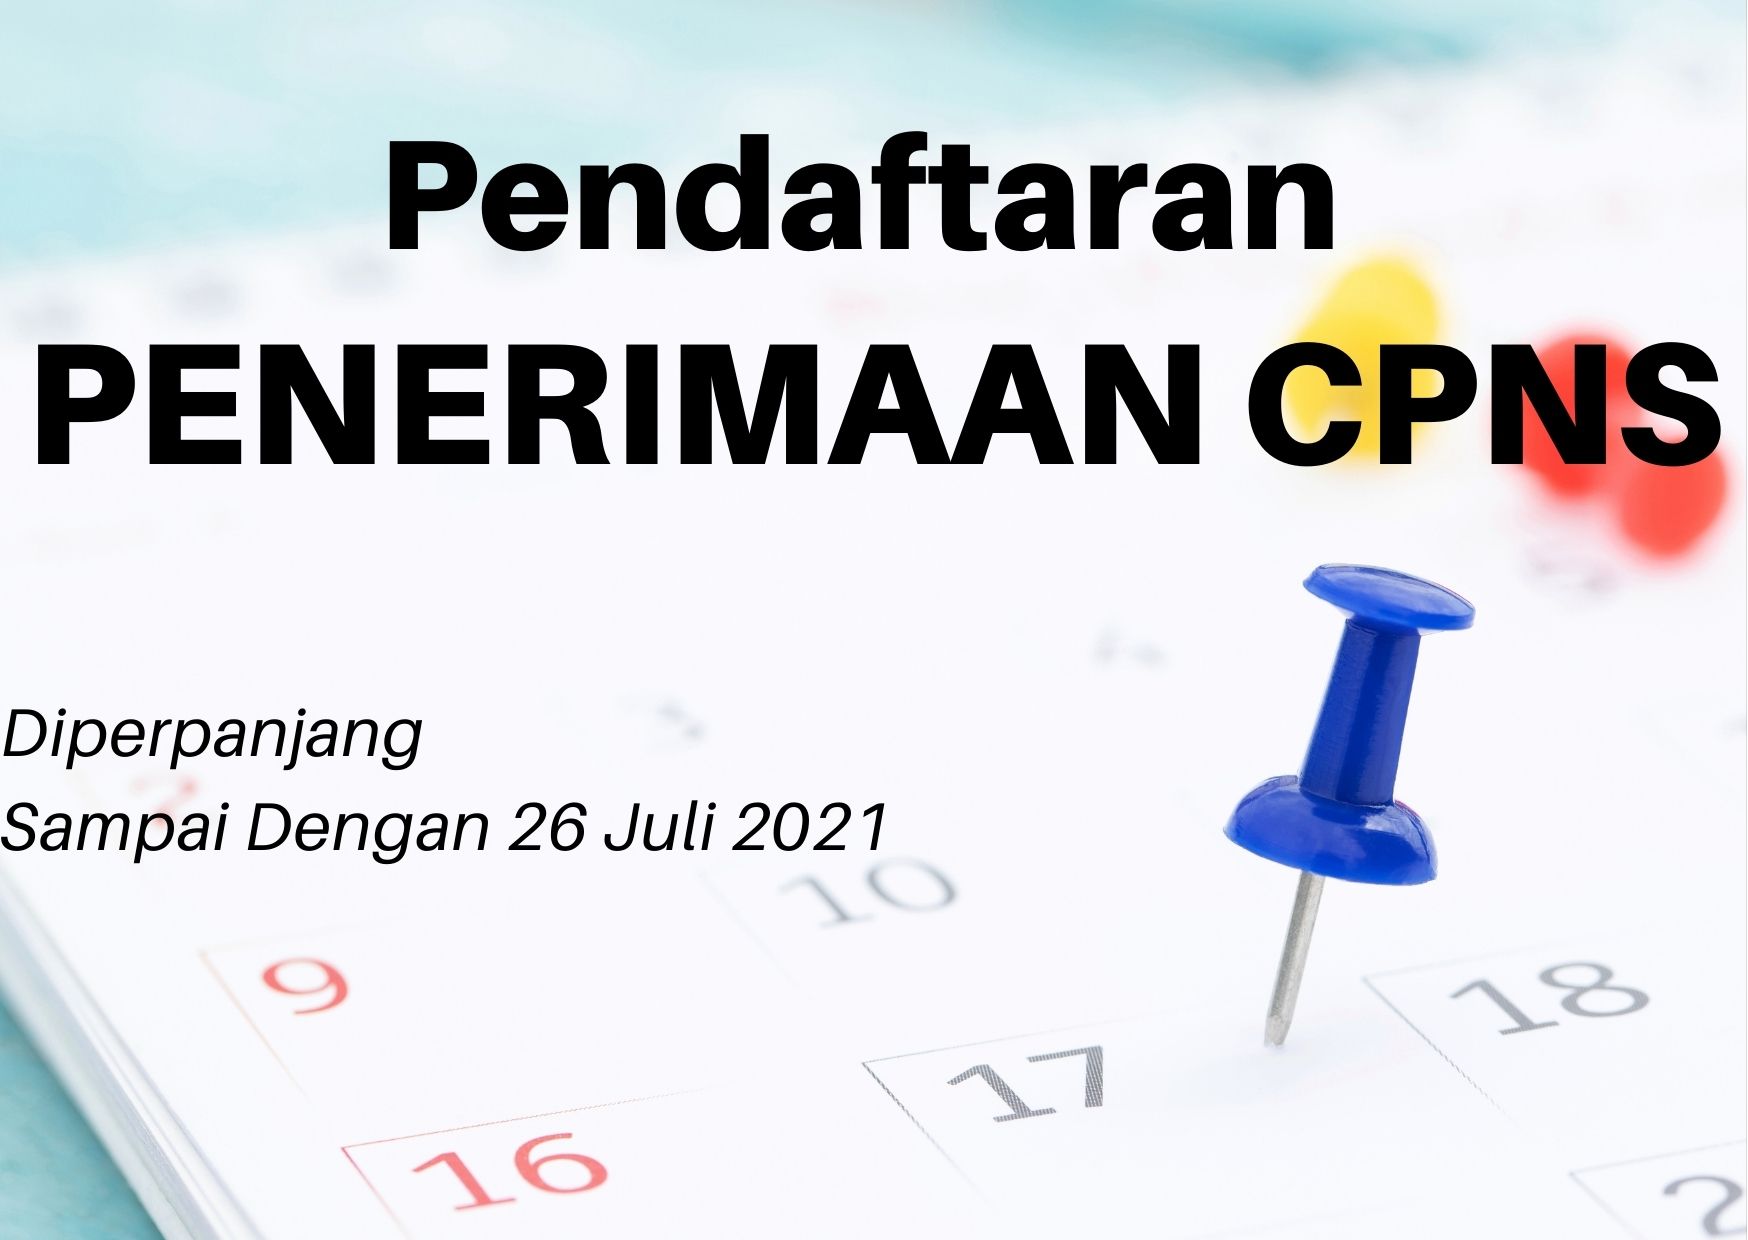 Pendaftaran CPNS Akan Diperpanjang Sampai 26 Juli 2021